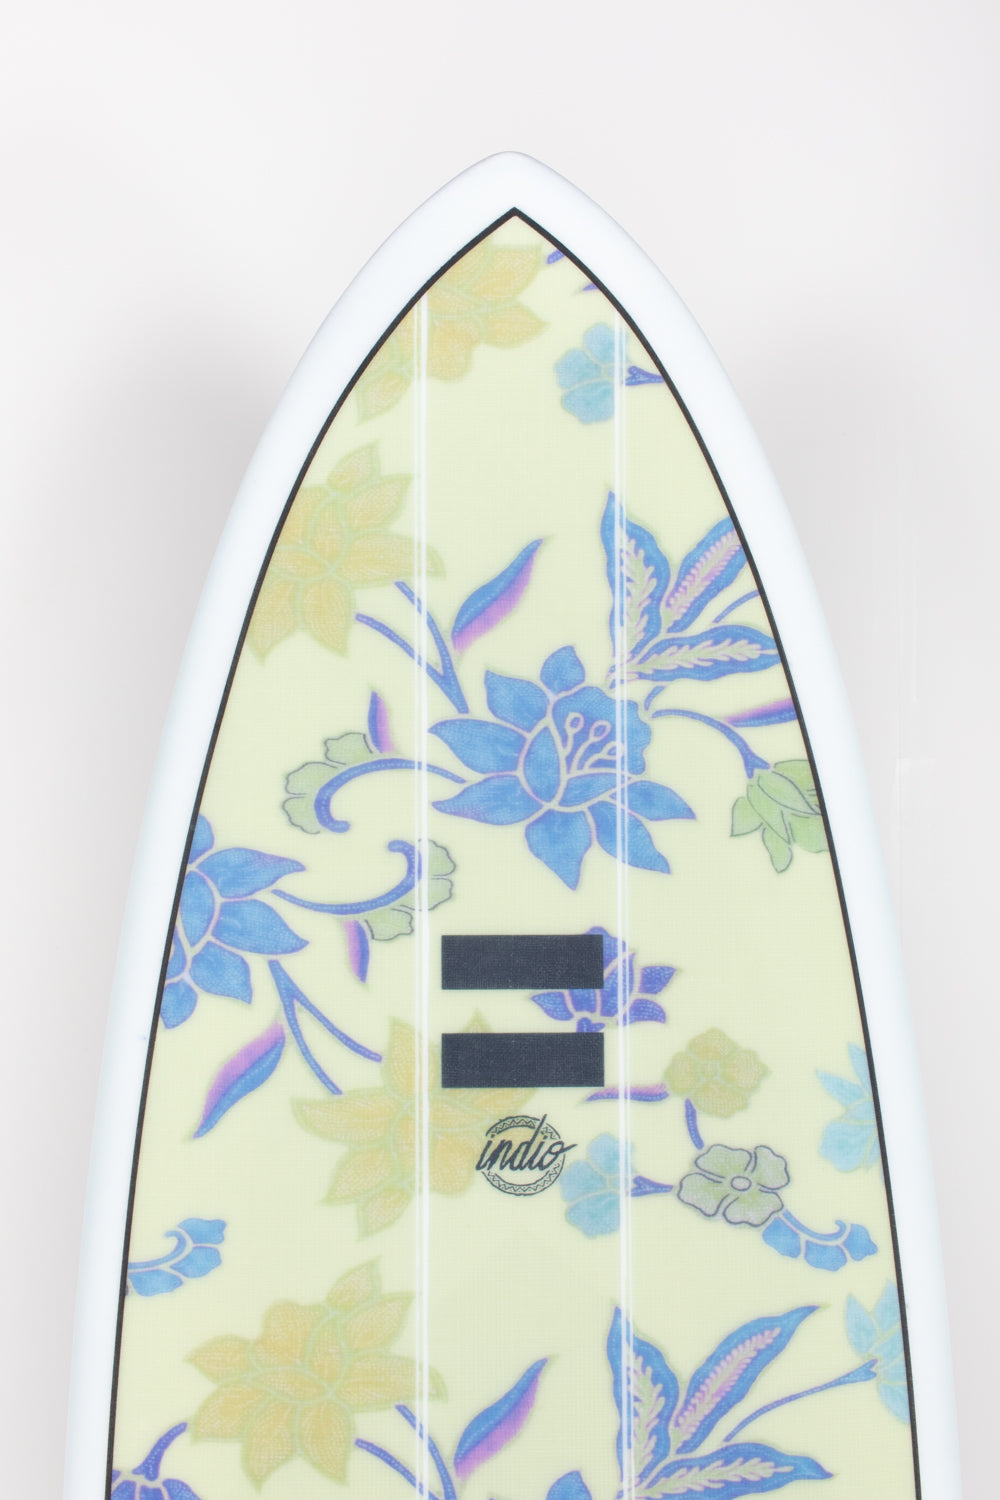 
                  
                    Pukas Surf Shop - Indio Endurance - THE EGG Flowers - 7´2 x 21 3/4 x 2 3/4 - 50L
                  
                